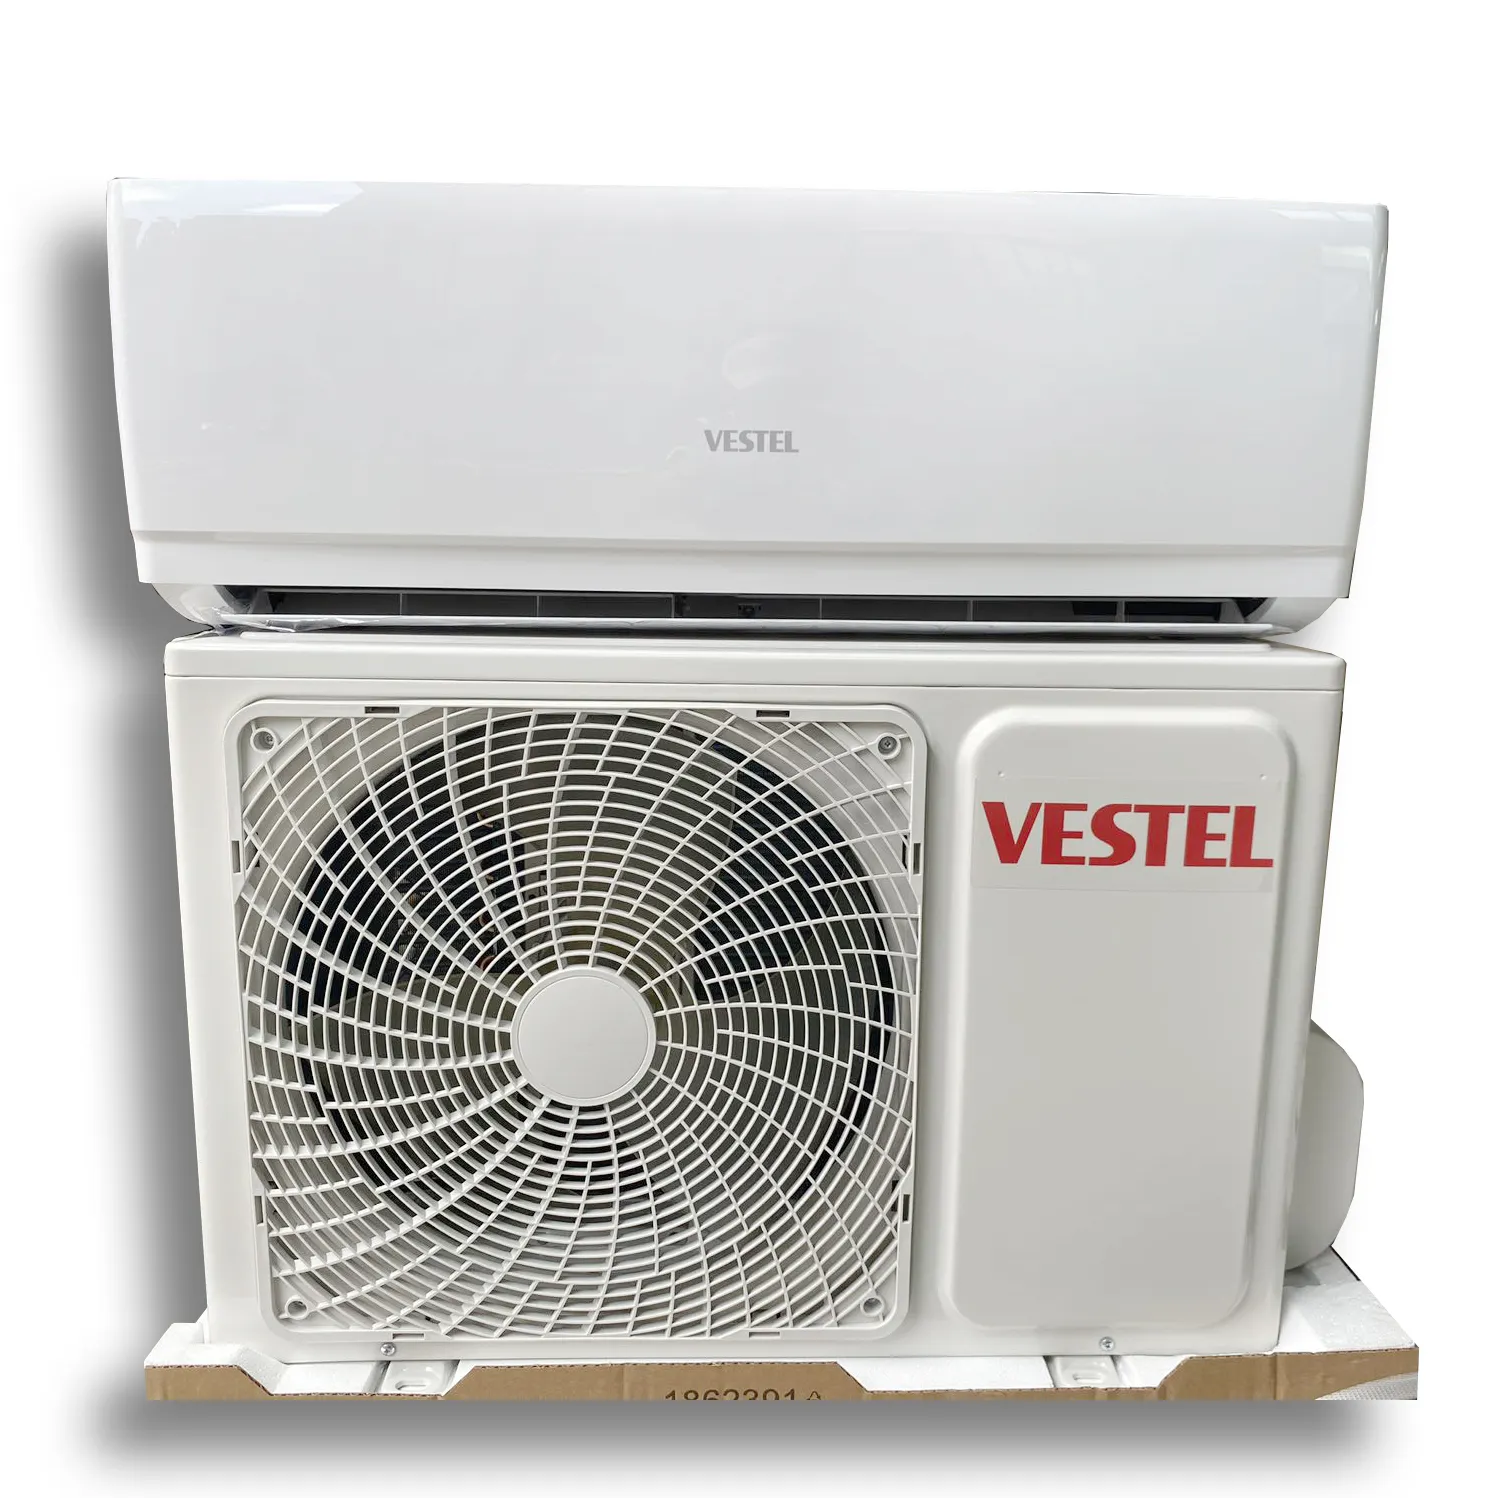 Vestel marca daikin mini condizionatore d'aria split a parete 1.5hp 12000btu garanzia fredda e termica prezzo all'ingrosso senza vento